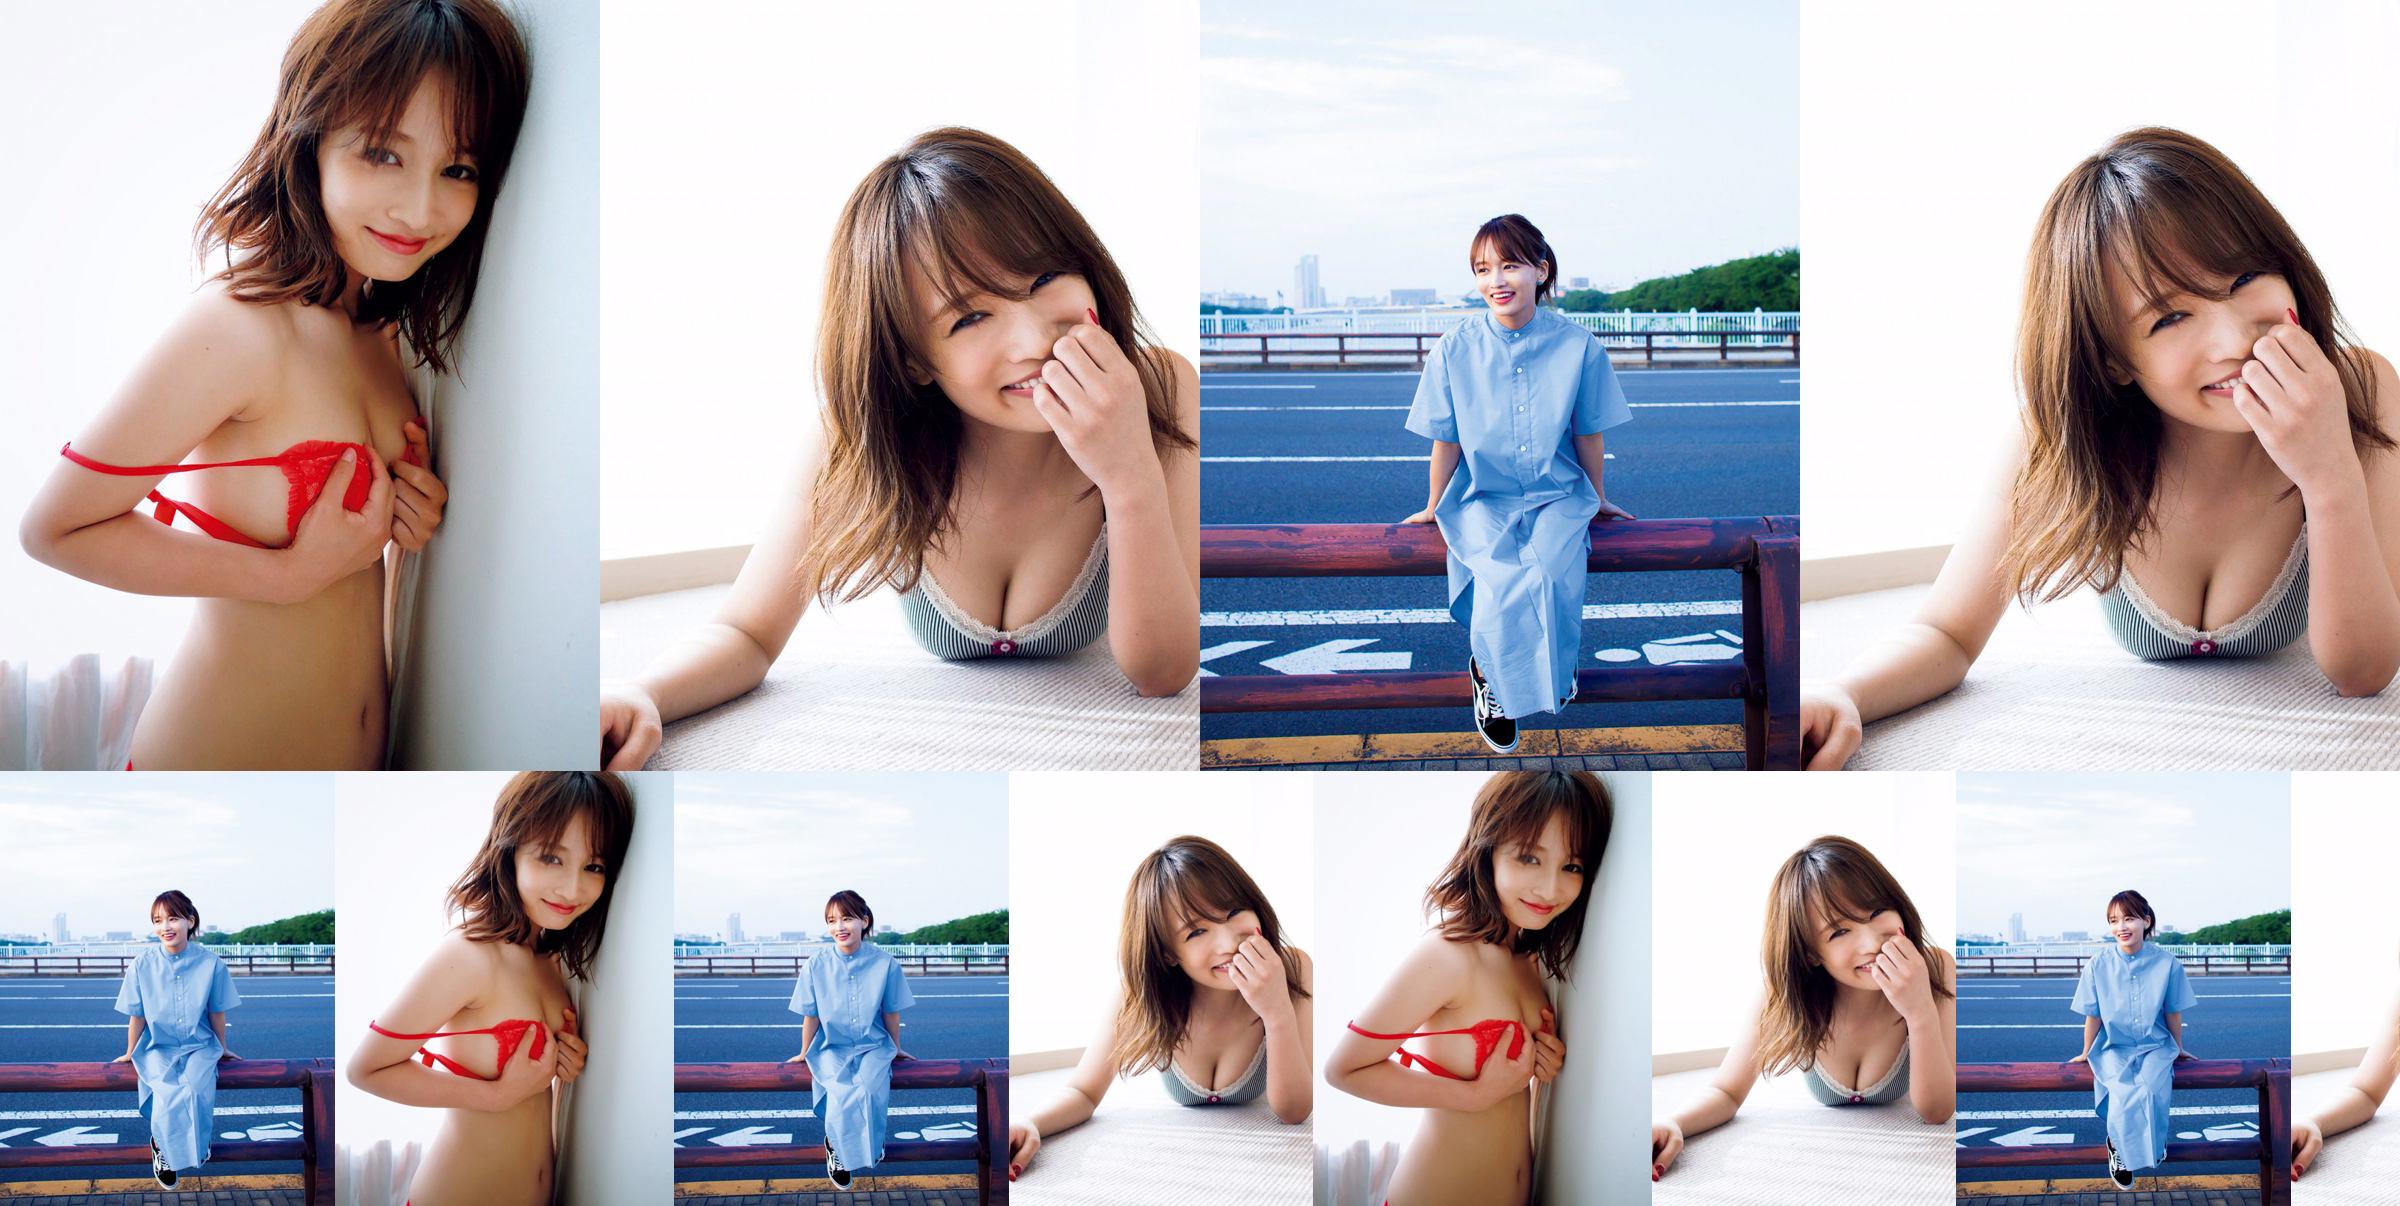 [SEXTA-FEIRA] Mai Watanabe "Copo F com corpo magro" foto No.1199a5 Página 2